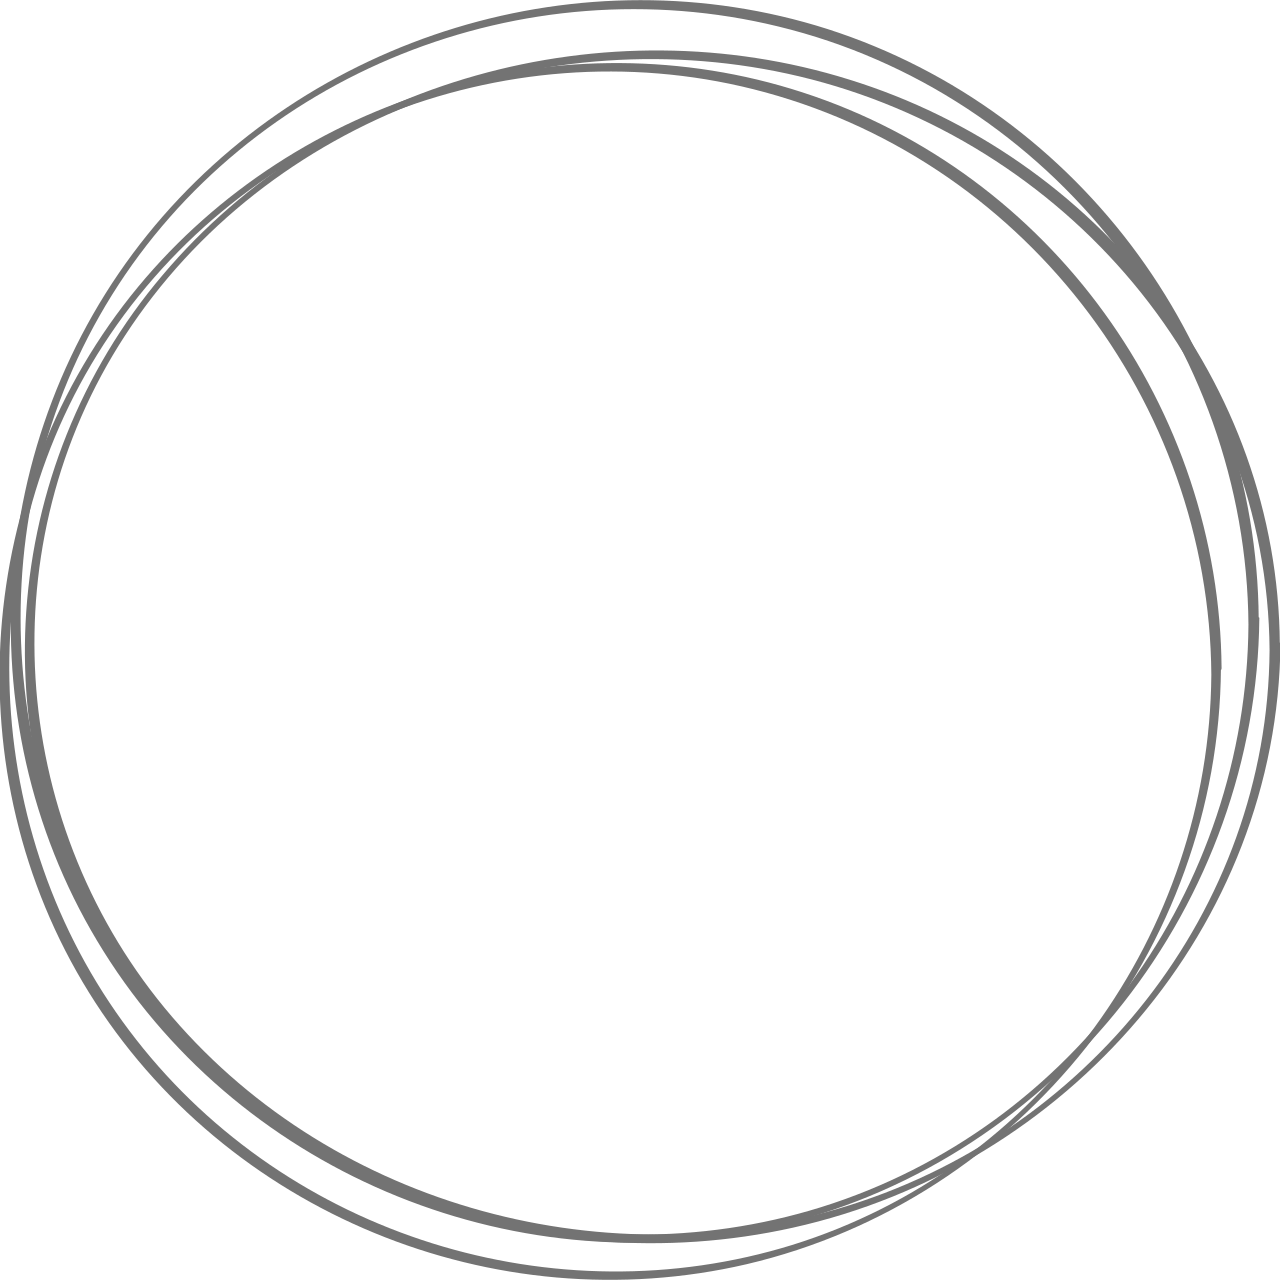 D&E's logo